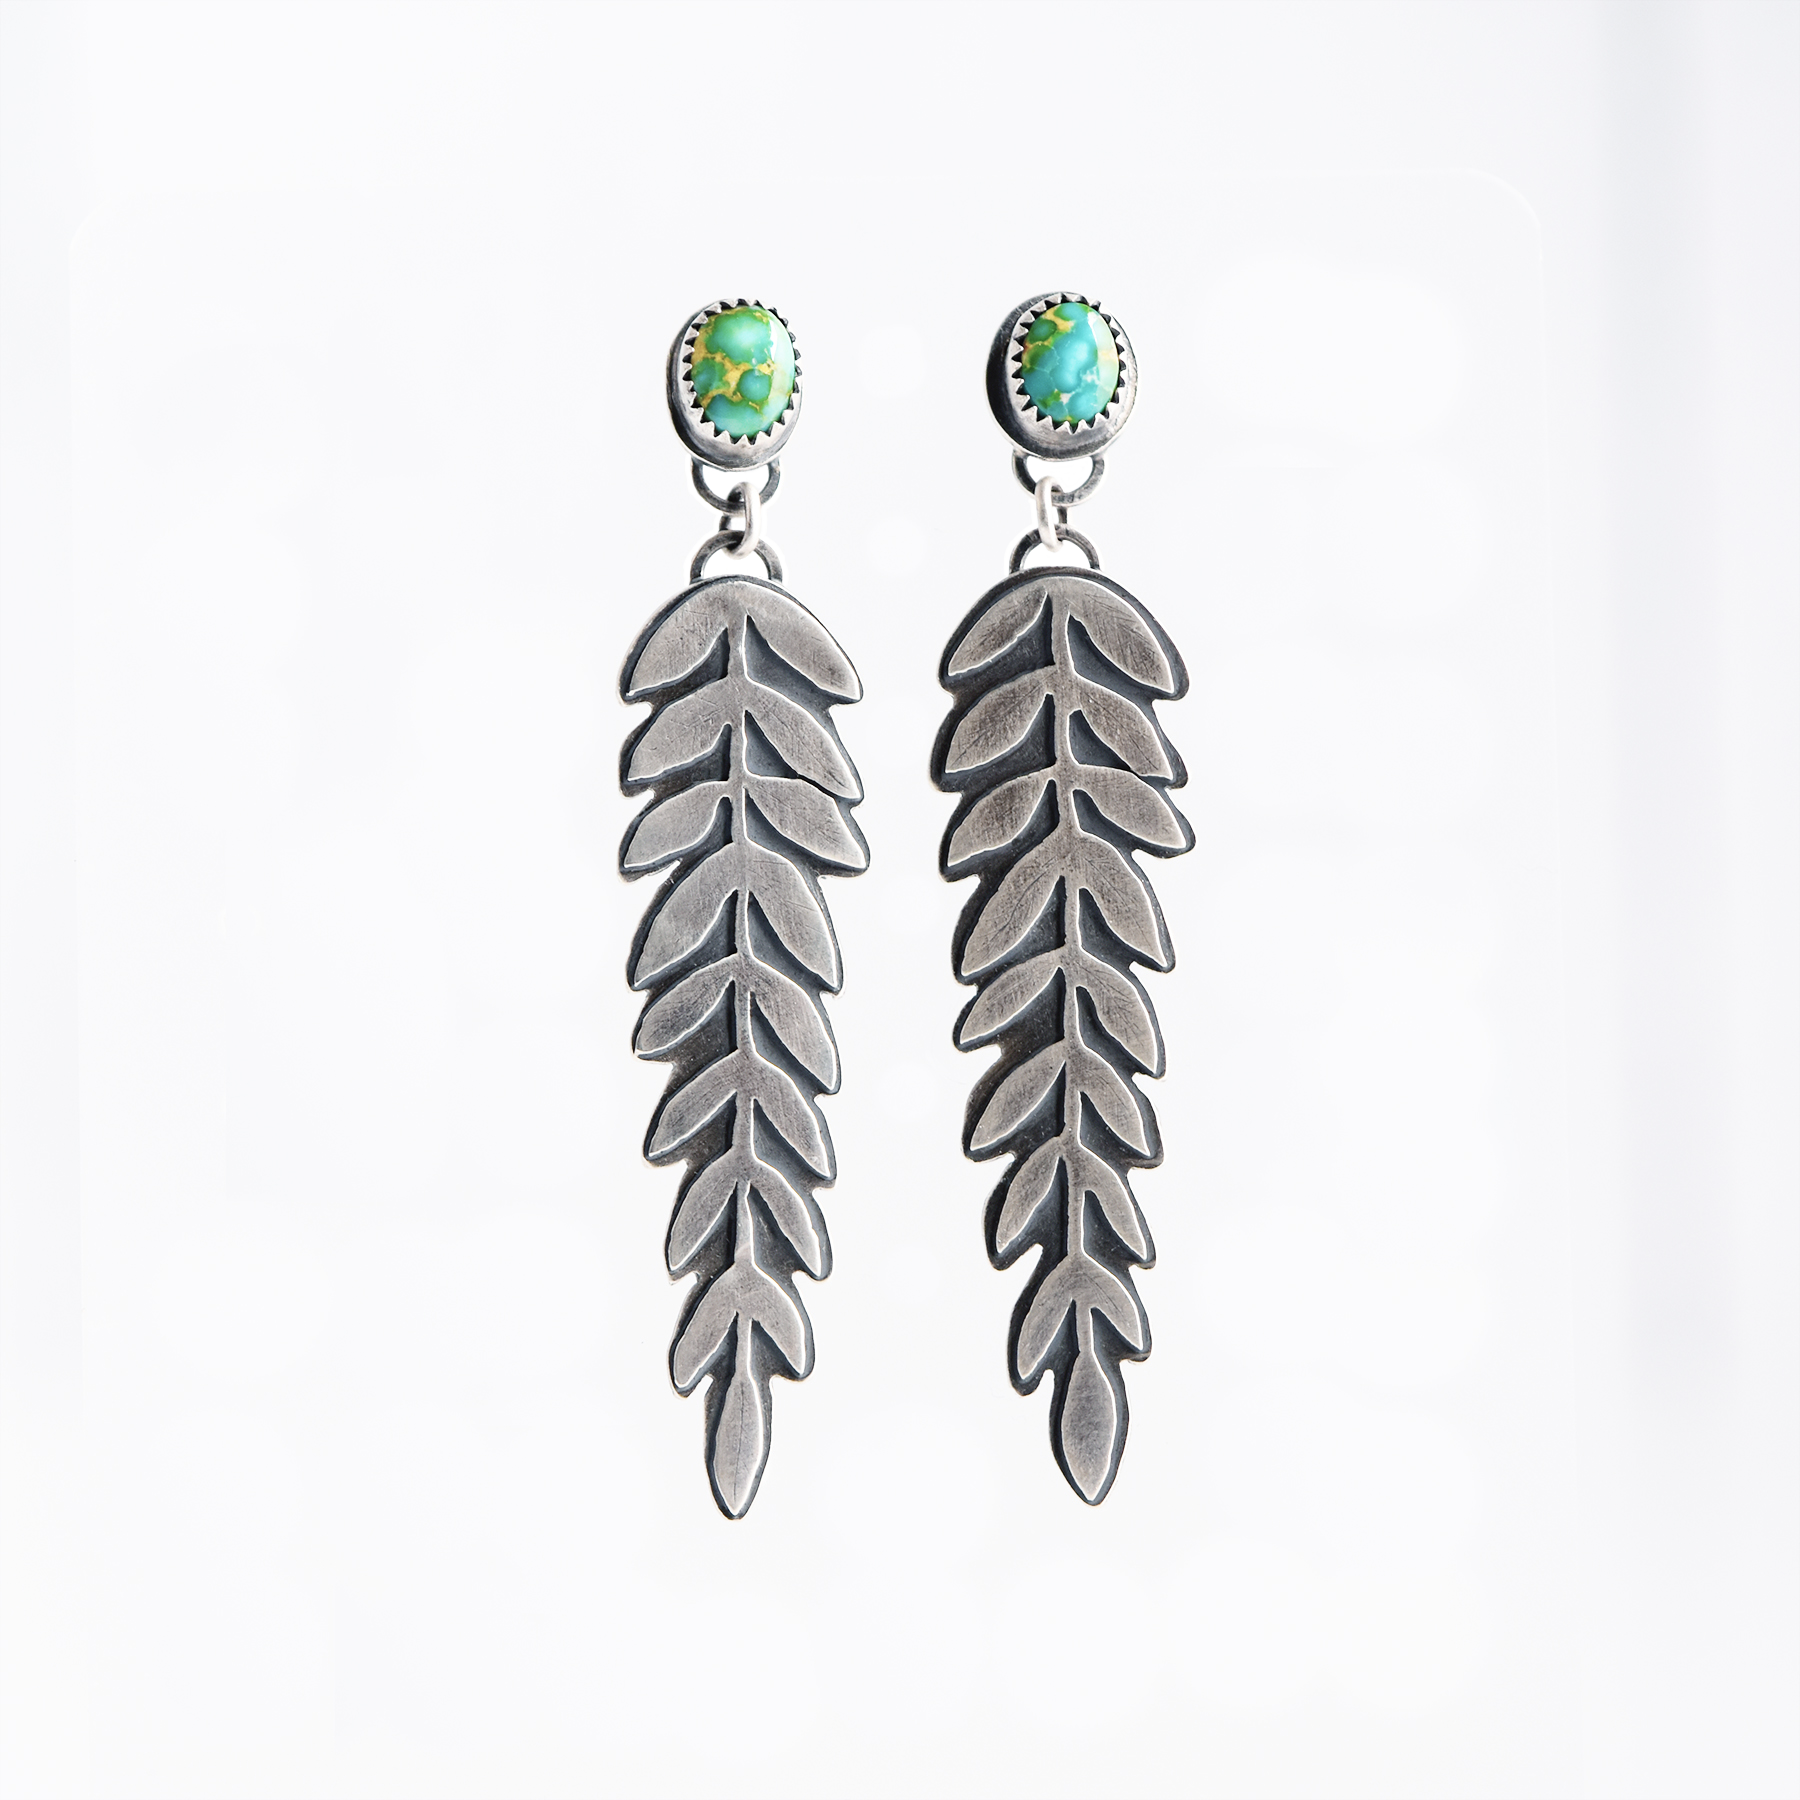 Vintage 925 Silver Turquoise Hook Women Earrings Wedding Dangle Drop Jewelry  | eBay